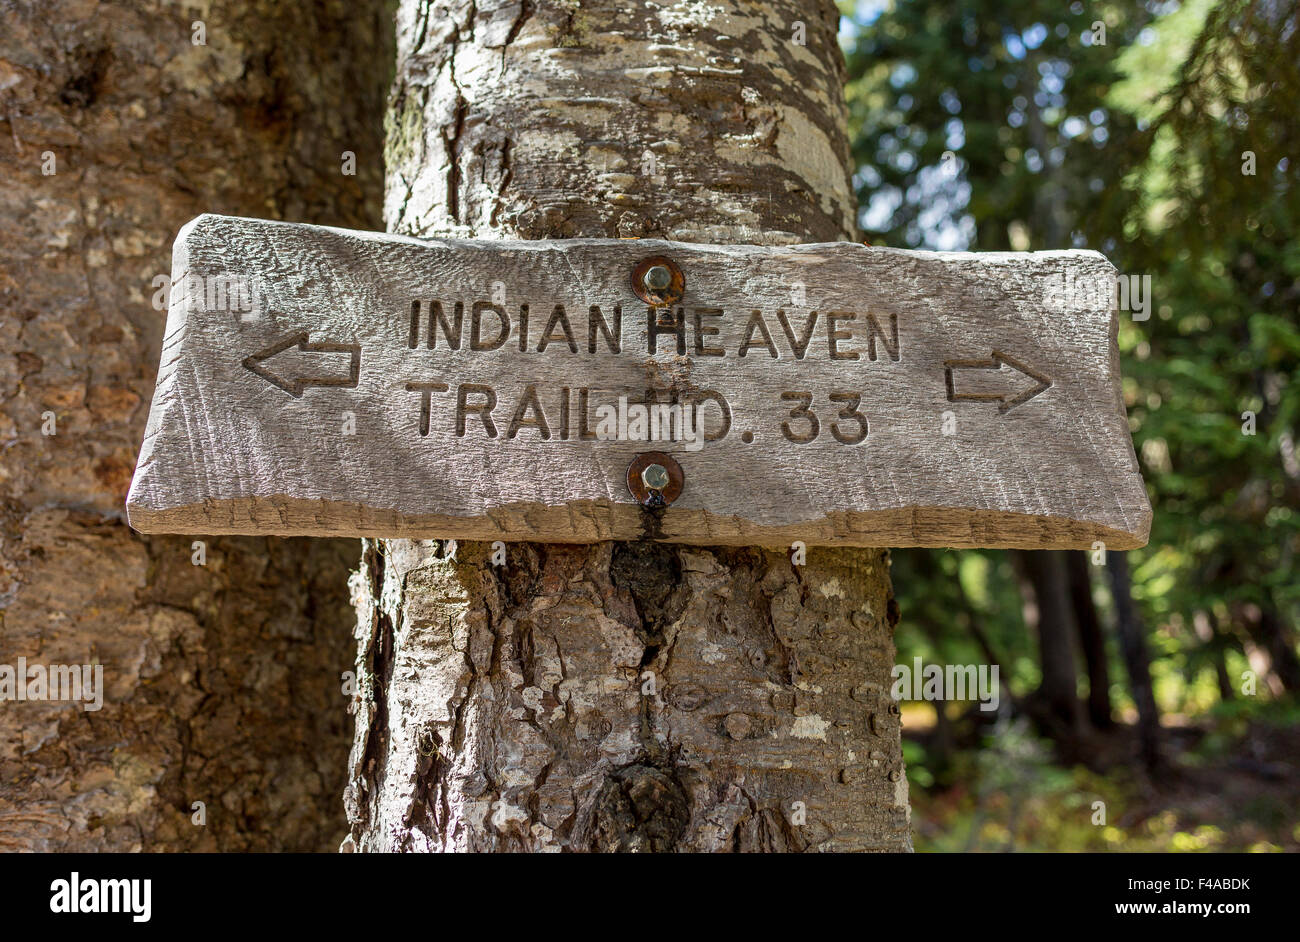 GIFFORD PINCHOT NATIONAL FOREST, WASHINGTON, USA - Trail Schild am Baum im Indian Heaven Wilderness. Stockfoto